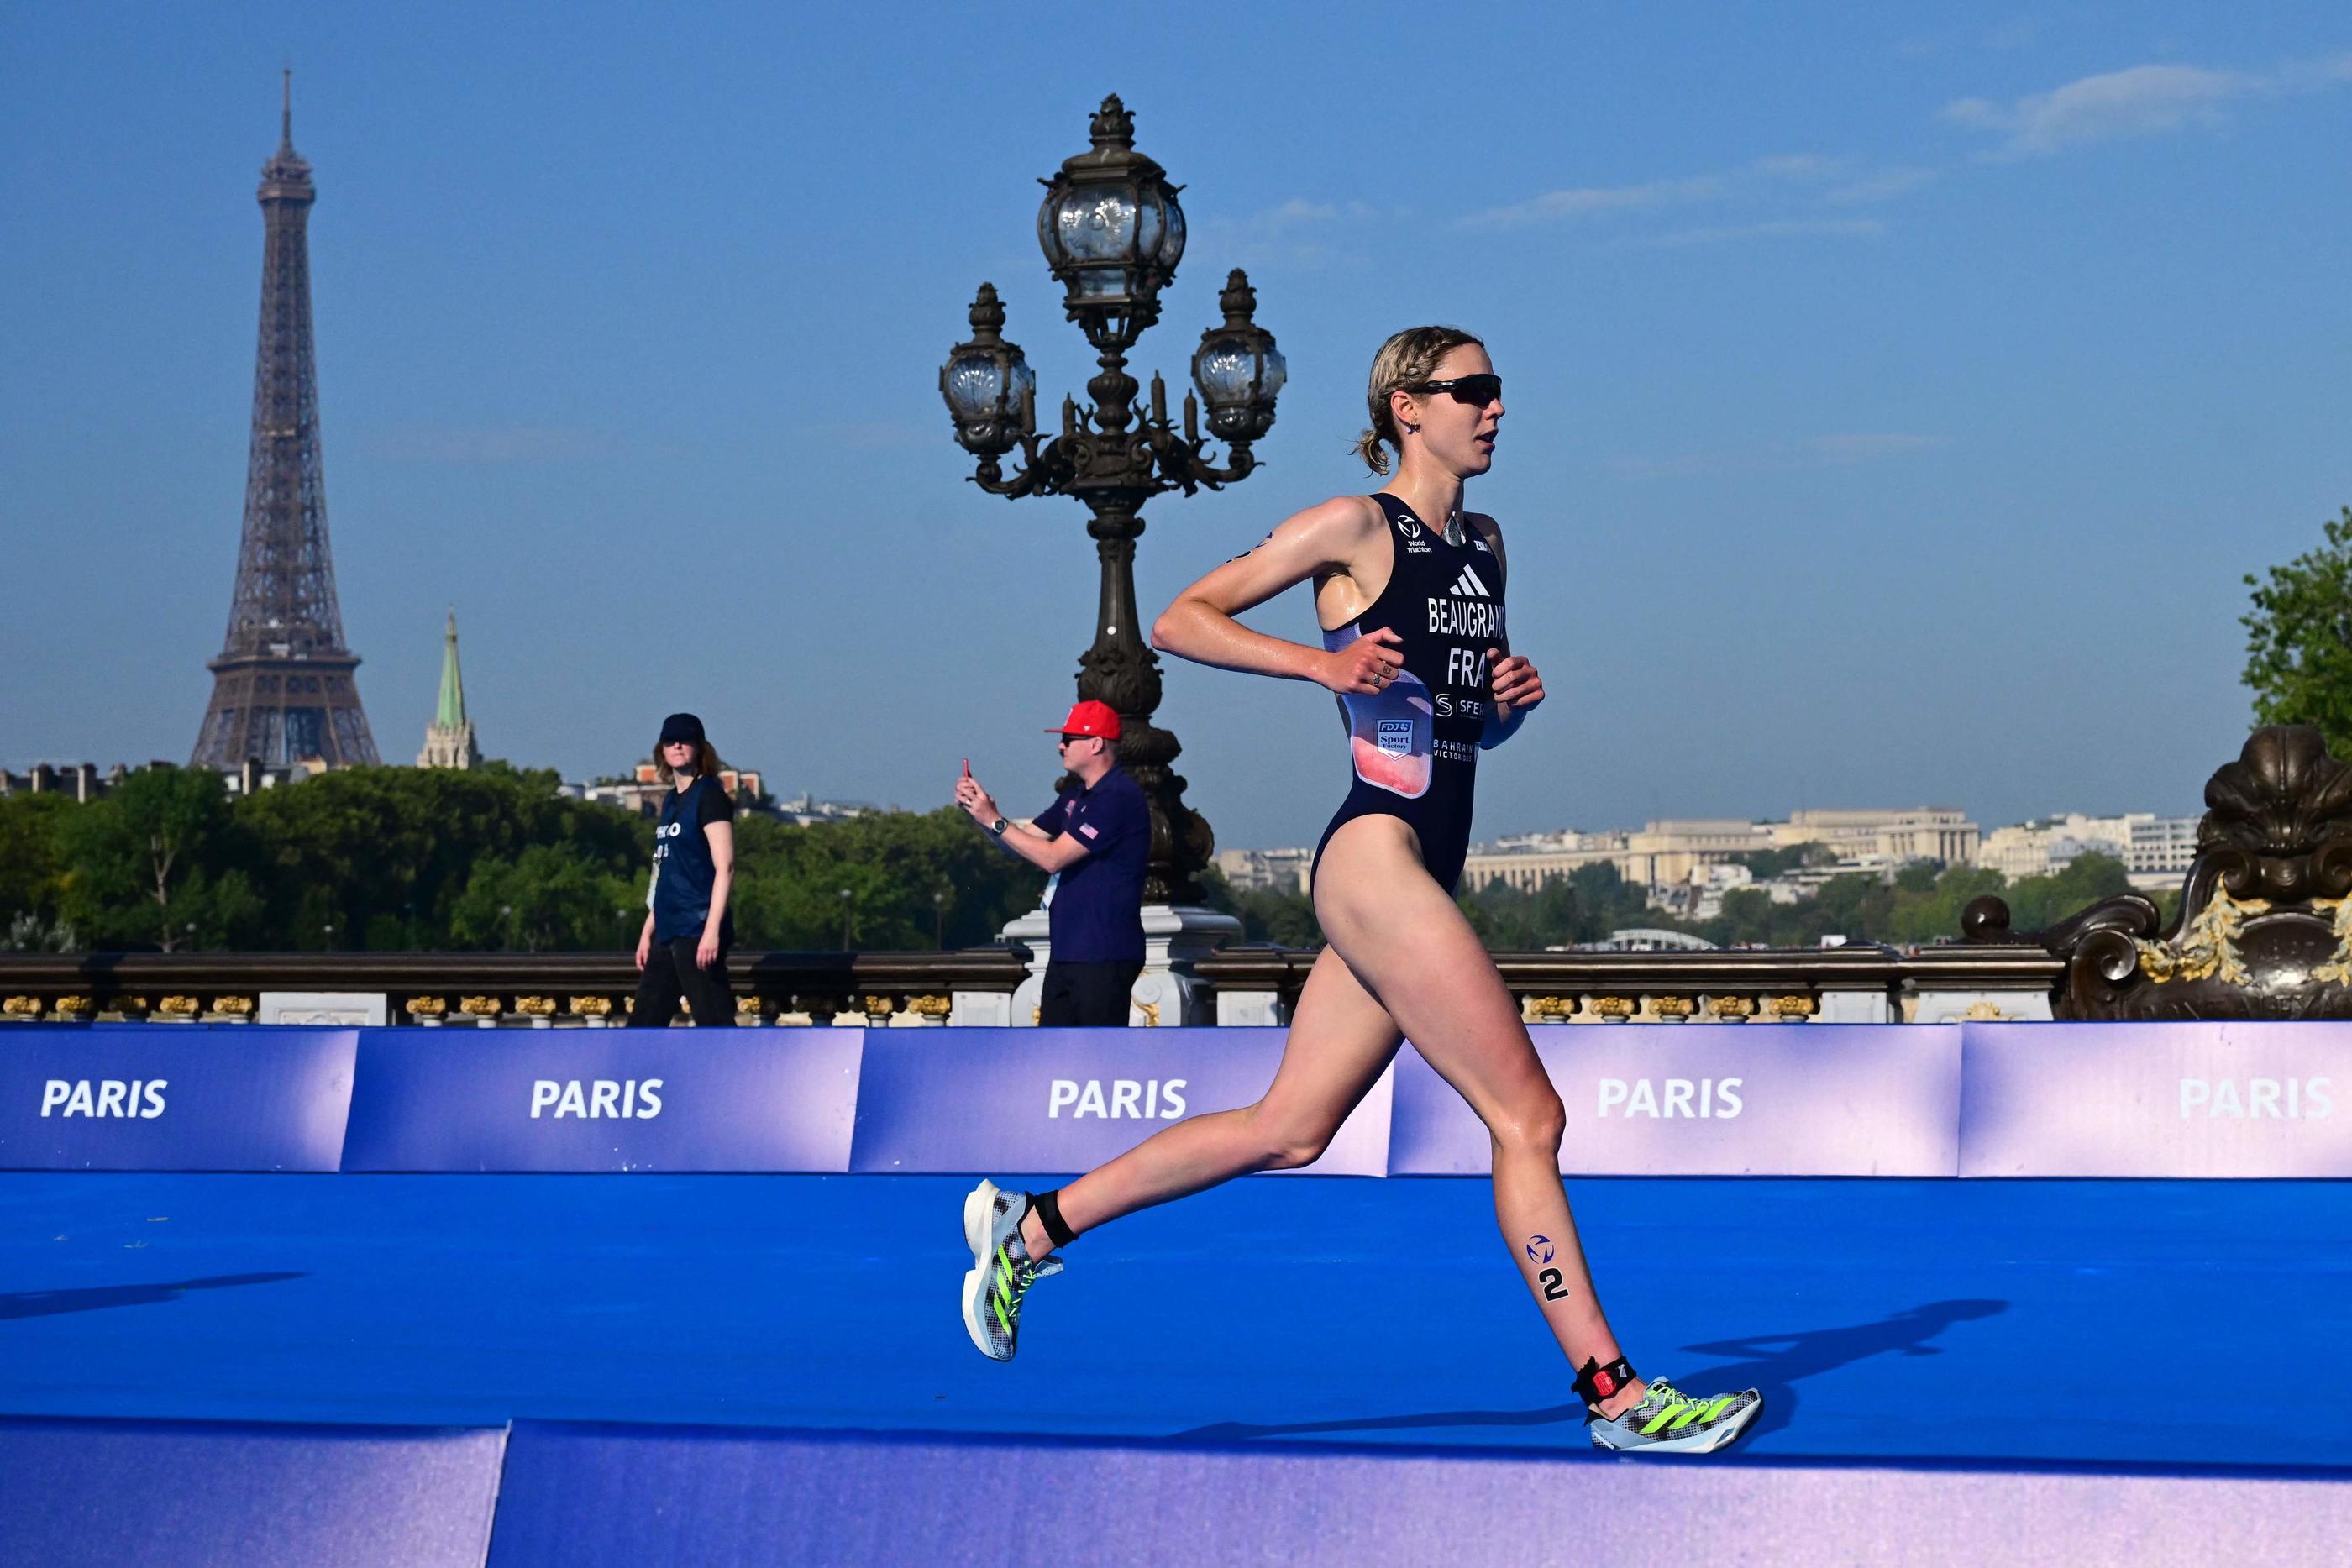 La triathlète Cassandre Beaugrand a pris la deuxième place du Test Event organisé à Paris ce jeudi. Elle décroche sa qualification pour les Jeux olympiques. Emmanuel DUNAND/AFP